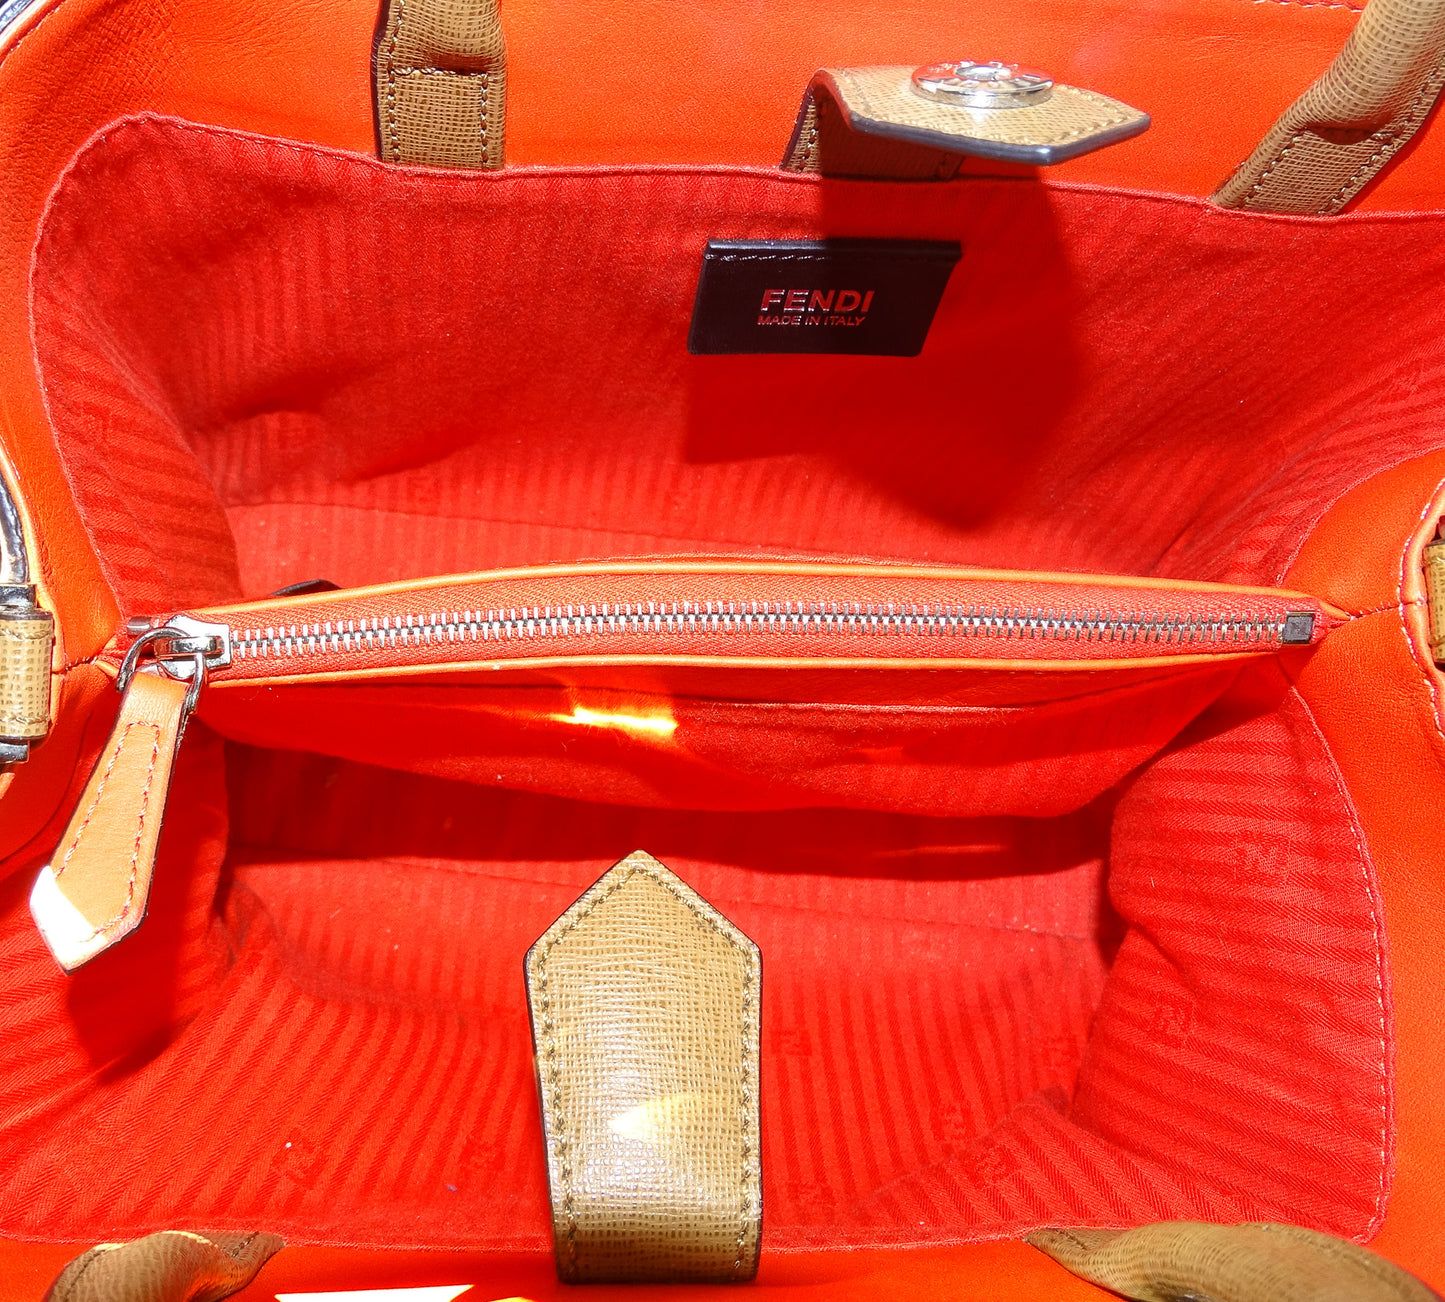 Fendi Tan Leather With Orange Interior Petite 2Jour